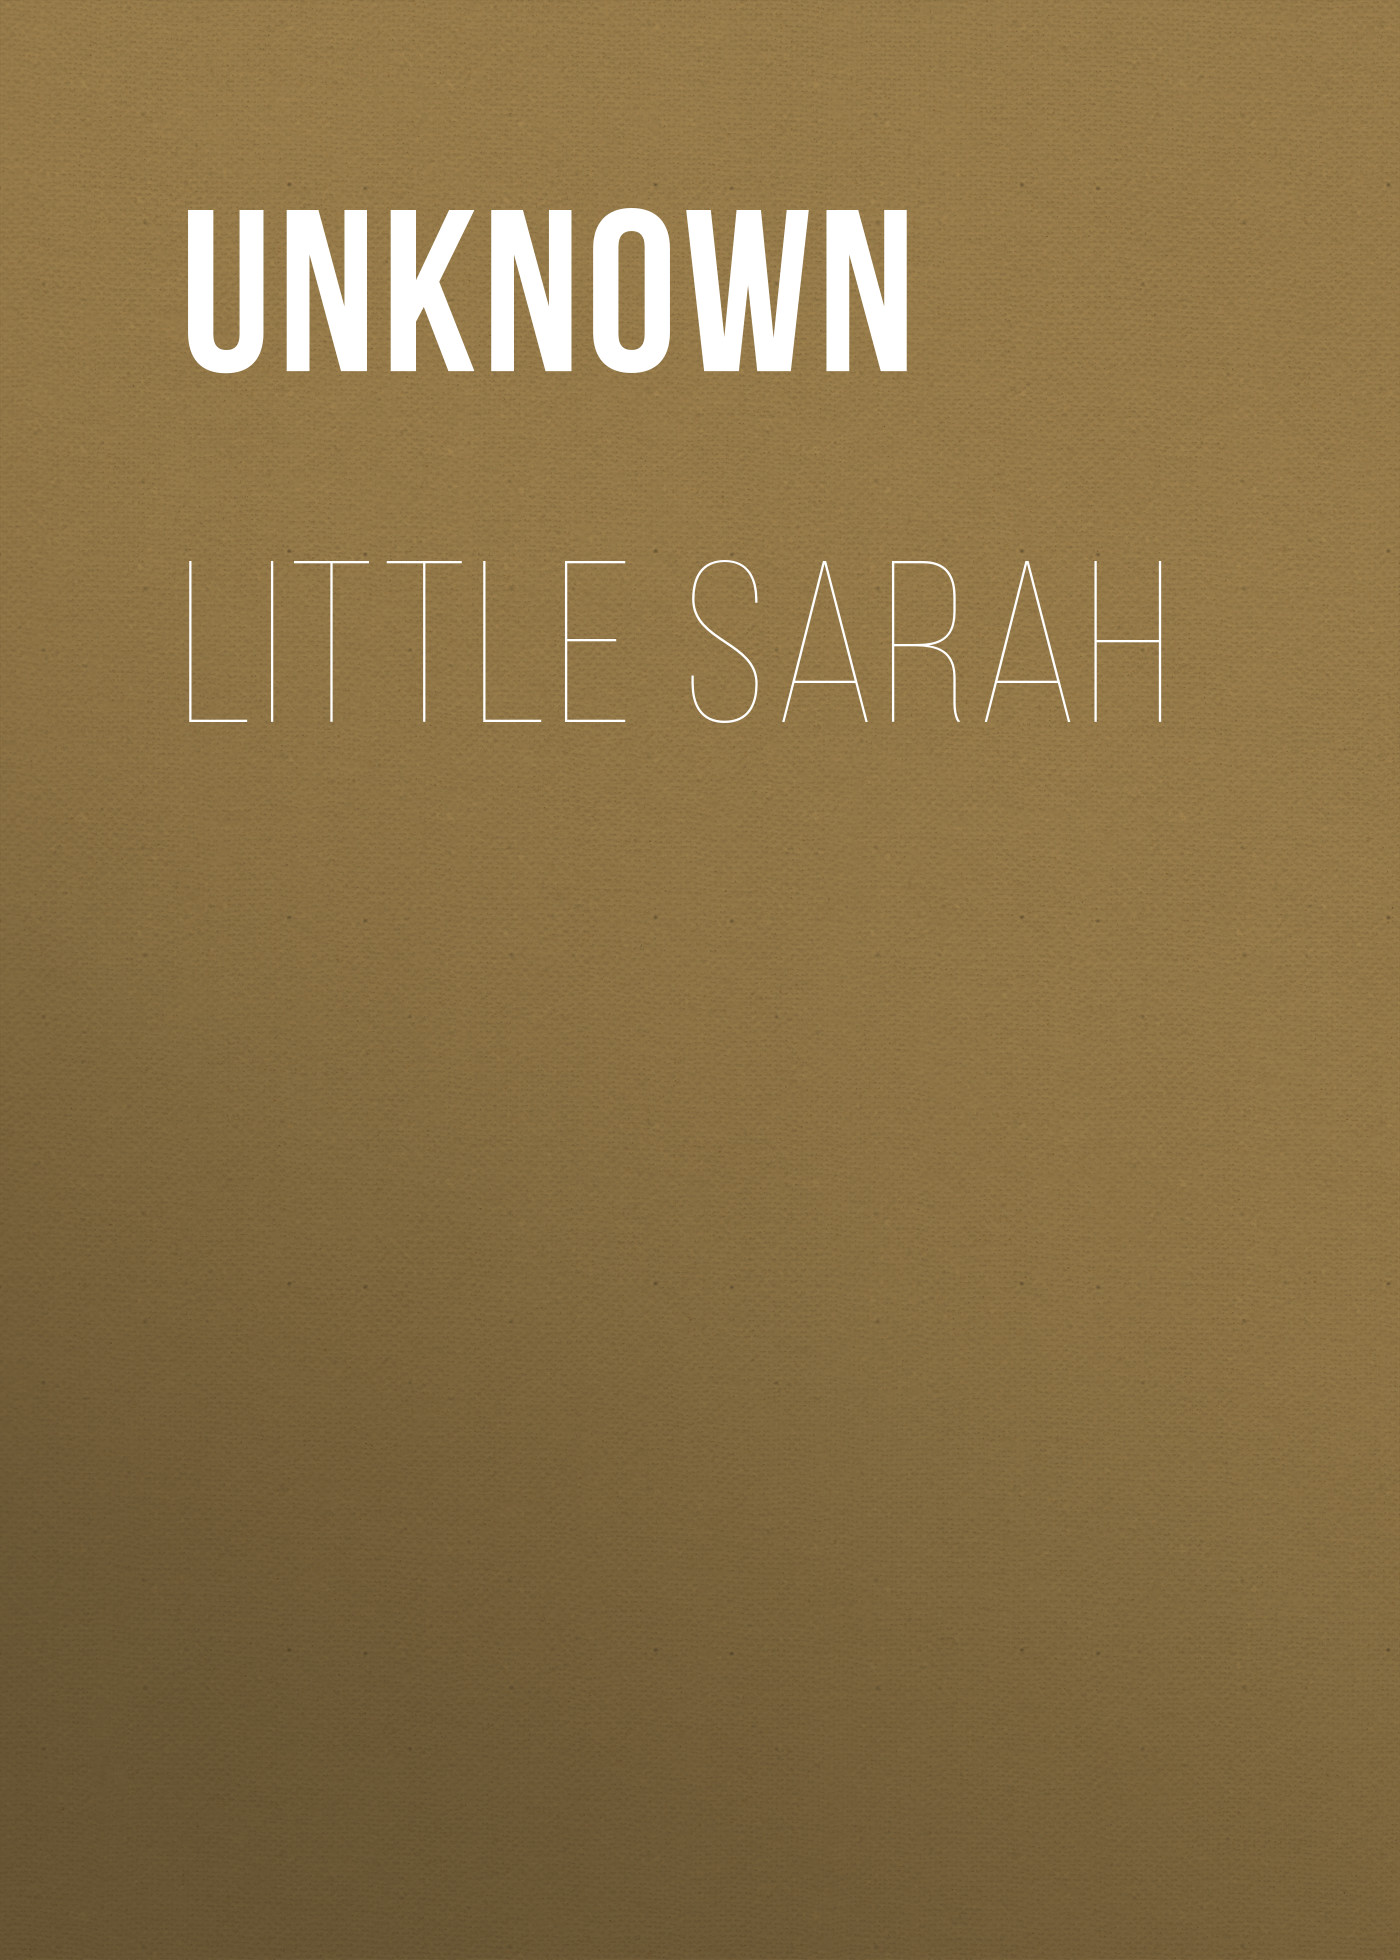 Книга Little Sarah из серии , созданная  Unknown, может относится к жанру Зарубежная классика, Зарубежная старинная литература. Стоимость электронной книги Little Sarah с идентификатором 35495487 составляет 0 руб.